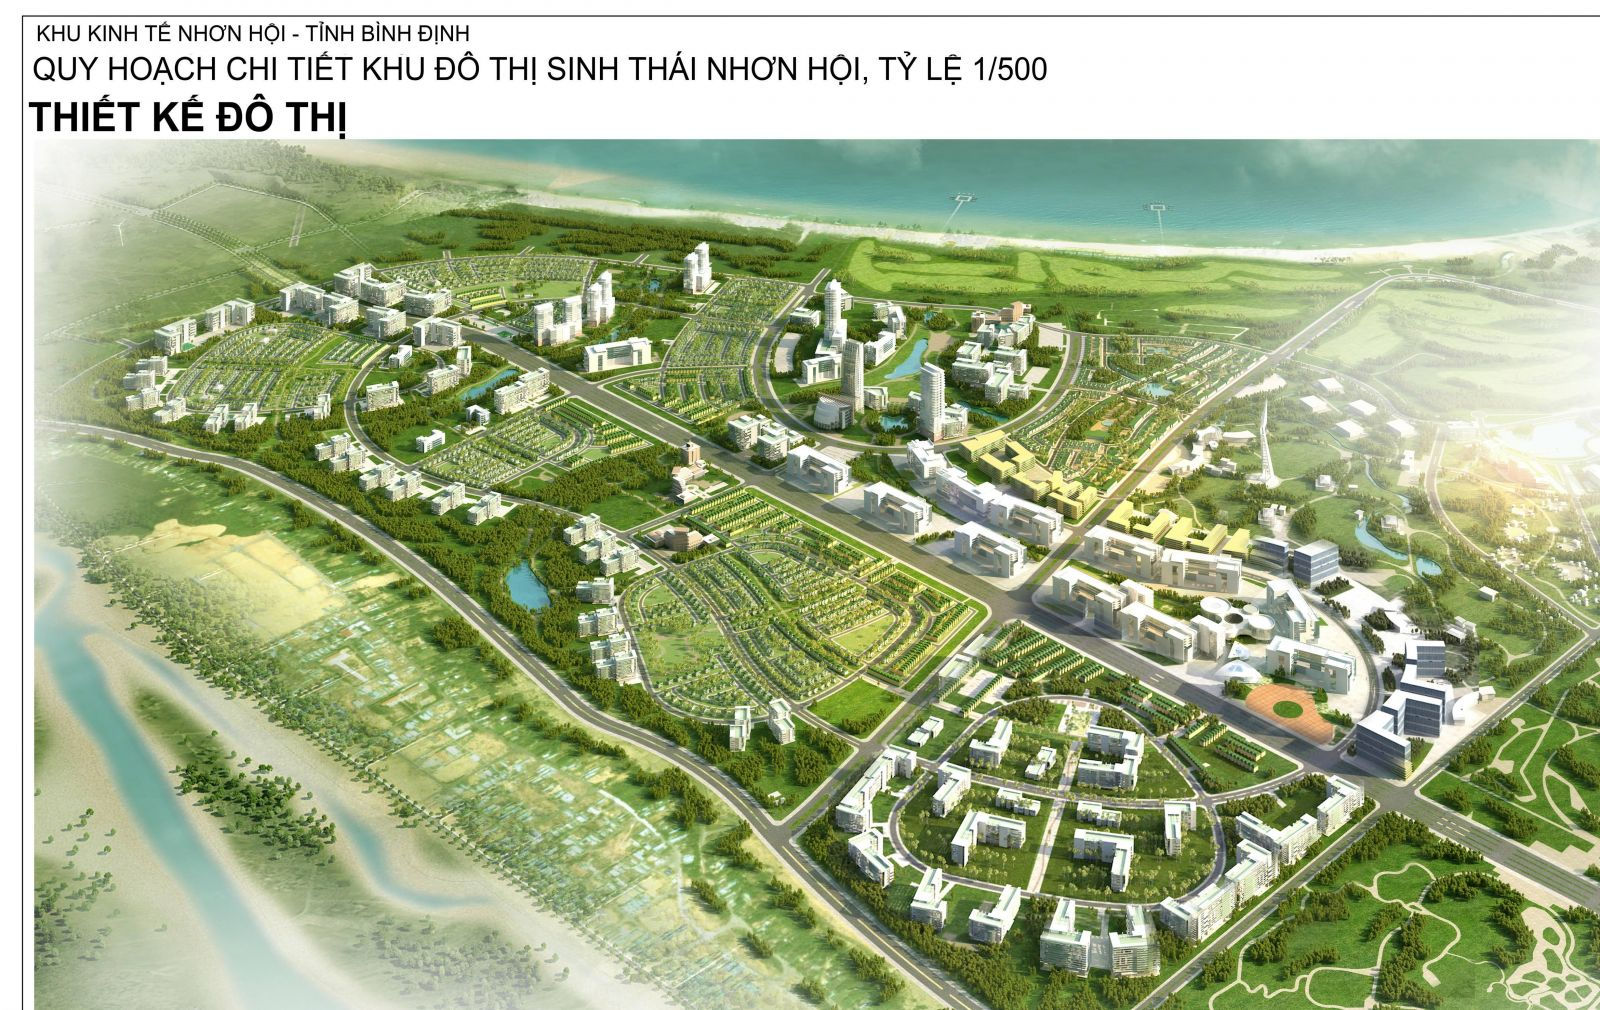 FLC sẽ được tỉnh Bình Định đổi đất ở Khu đô thị sinh thái Nhơn Hội sau khi hoàn thành hợp đồng BT ở dự án tuyến đường trục Khu kinh tế nối dài.